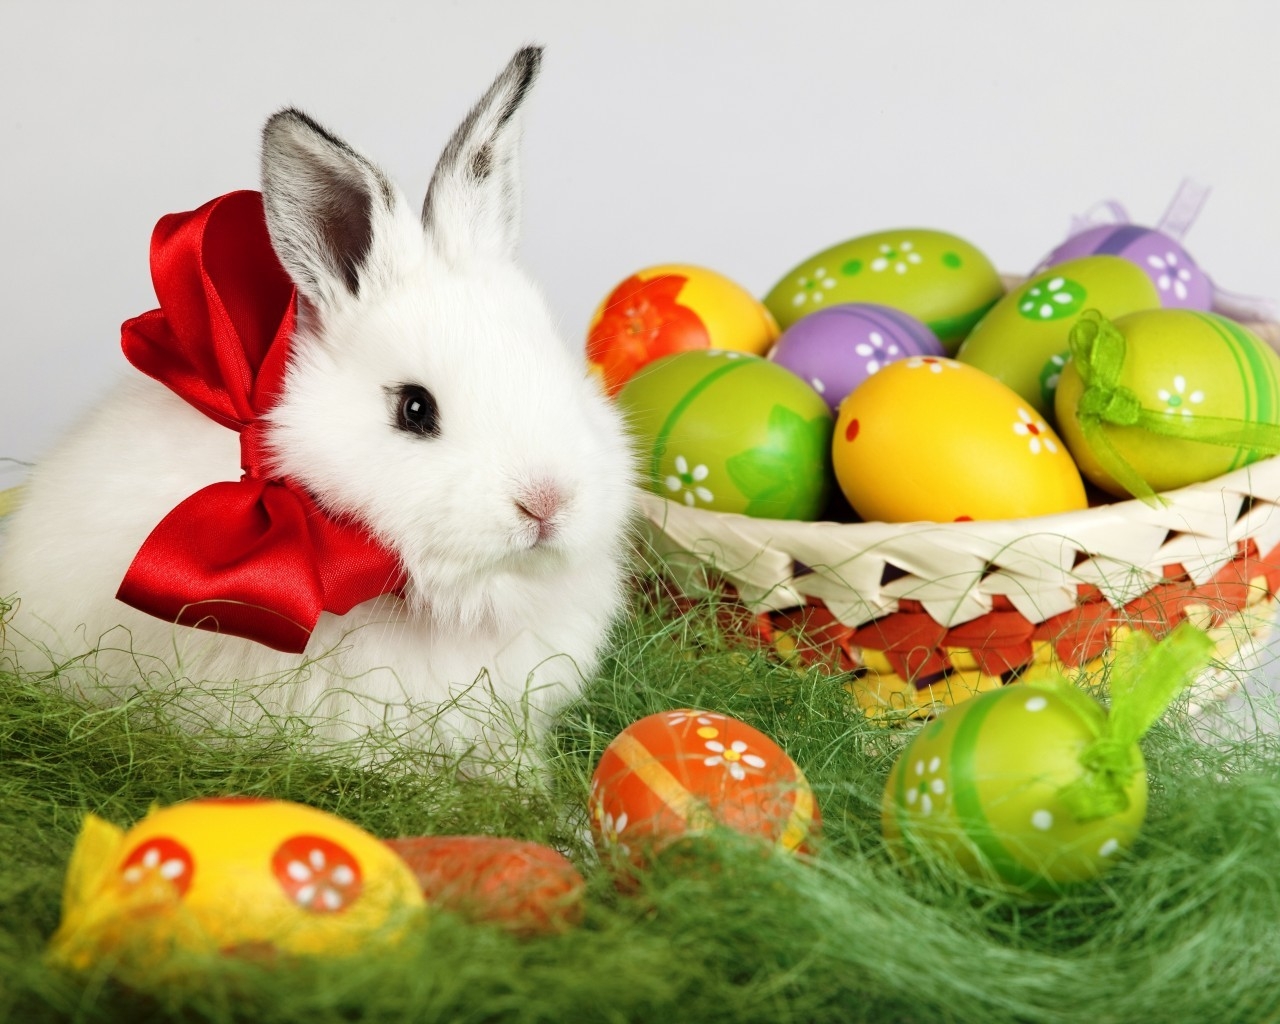 Easter White Rabbit for 1280 x 1024 resolution